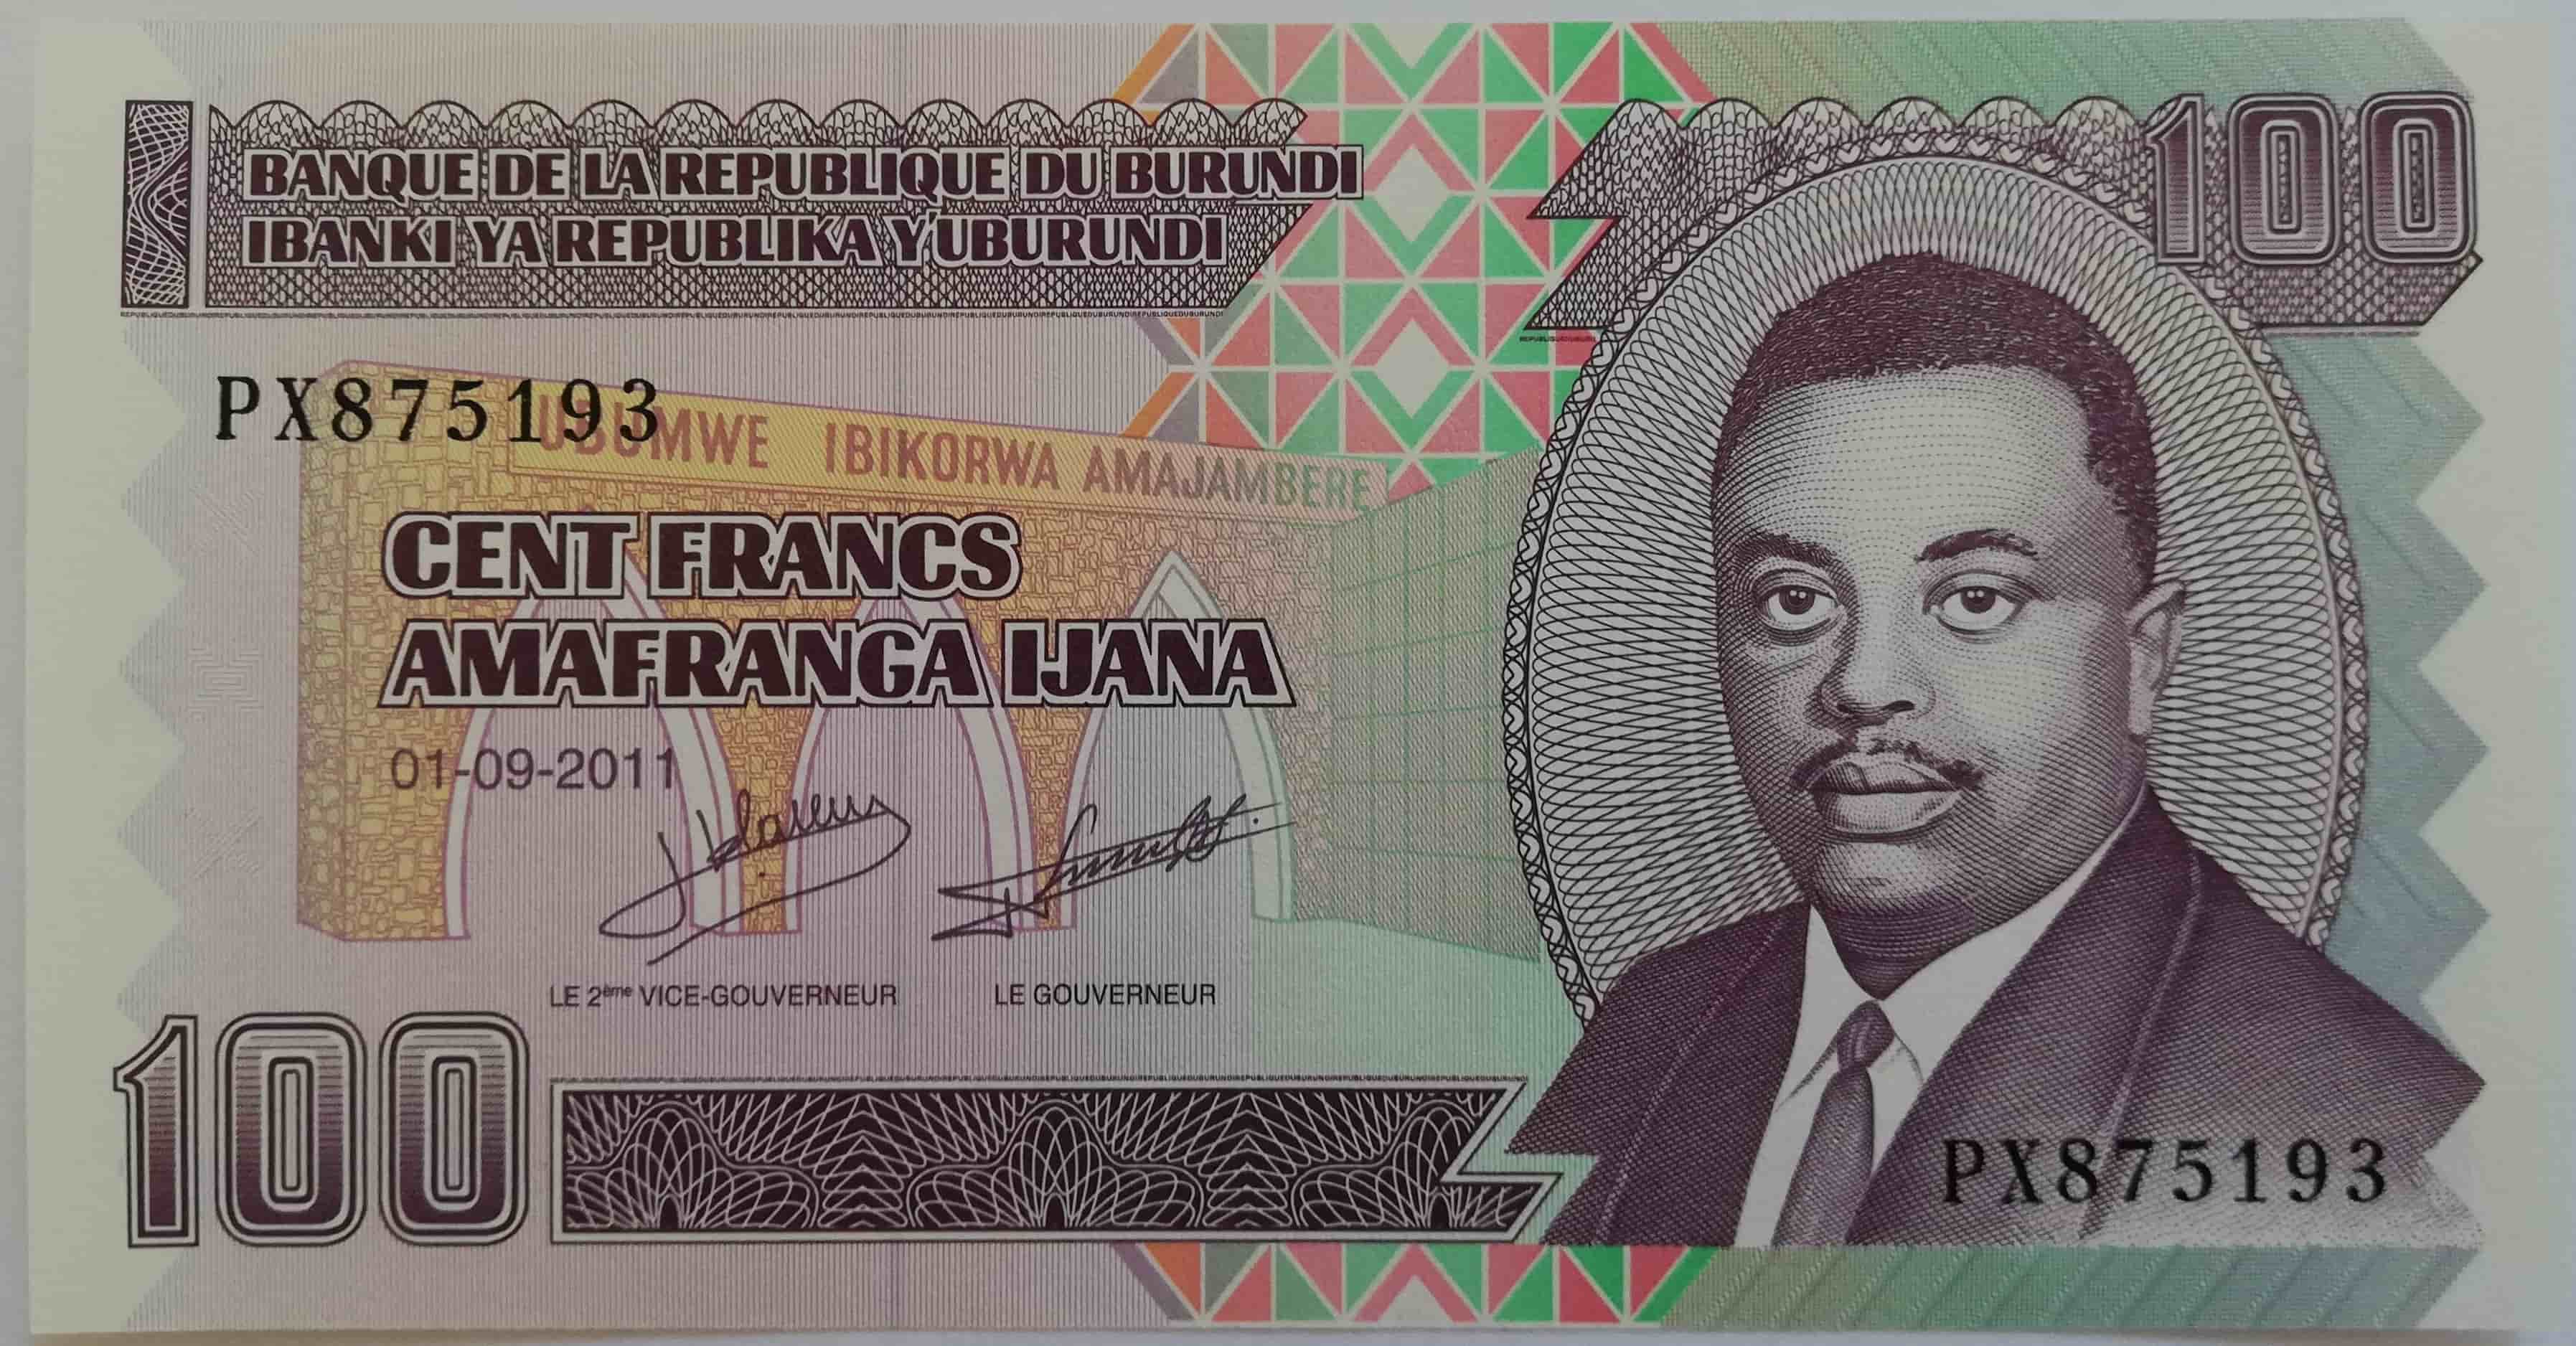 100 Francs 2011 Burundi